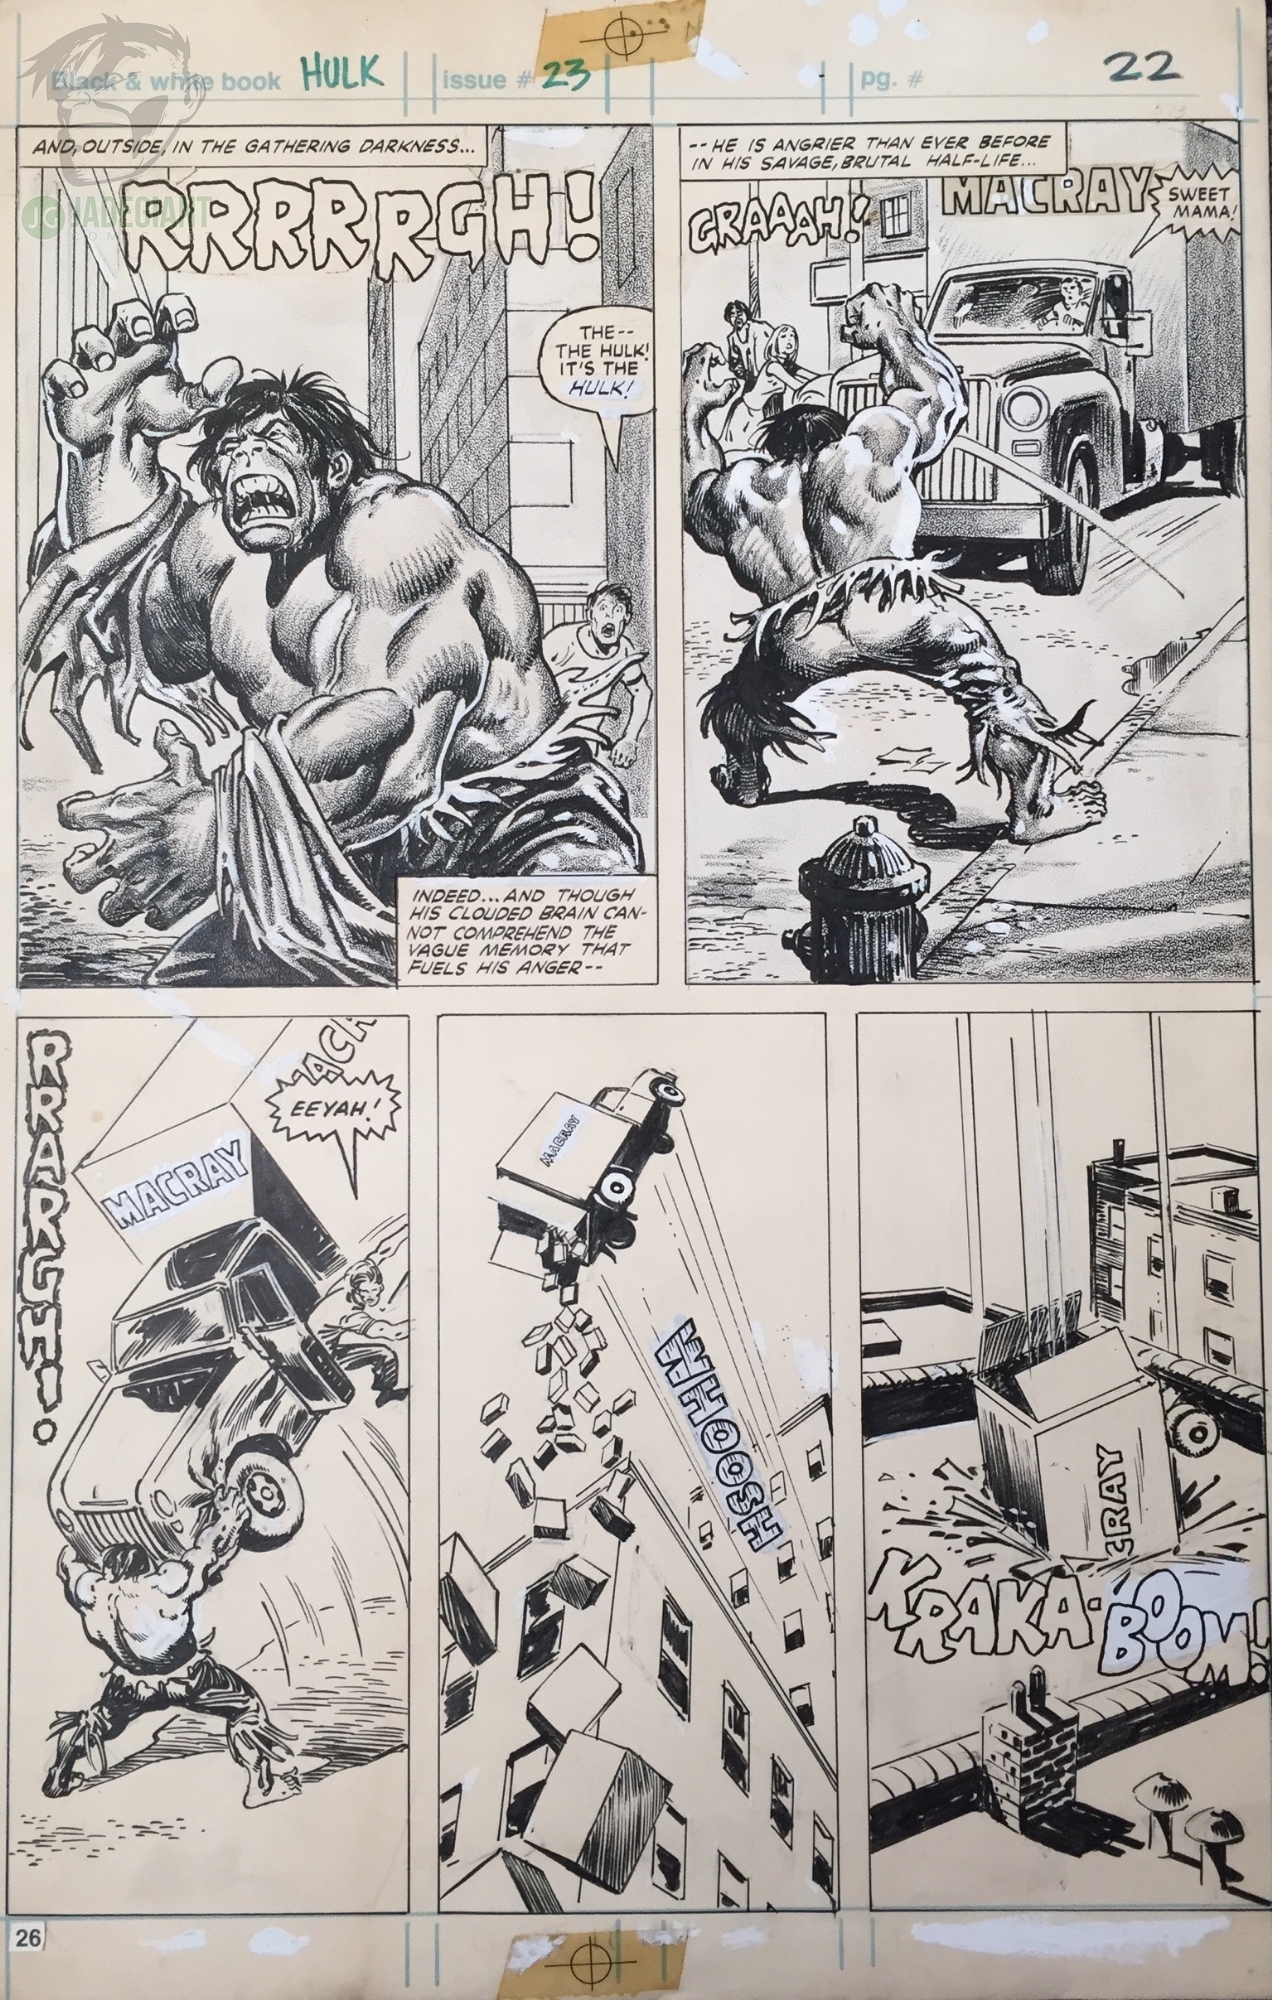 1980 Hulk Magazine issue 23 by John Buscema and Alfredo Alcala Comic Art